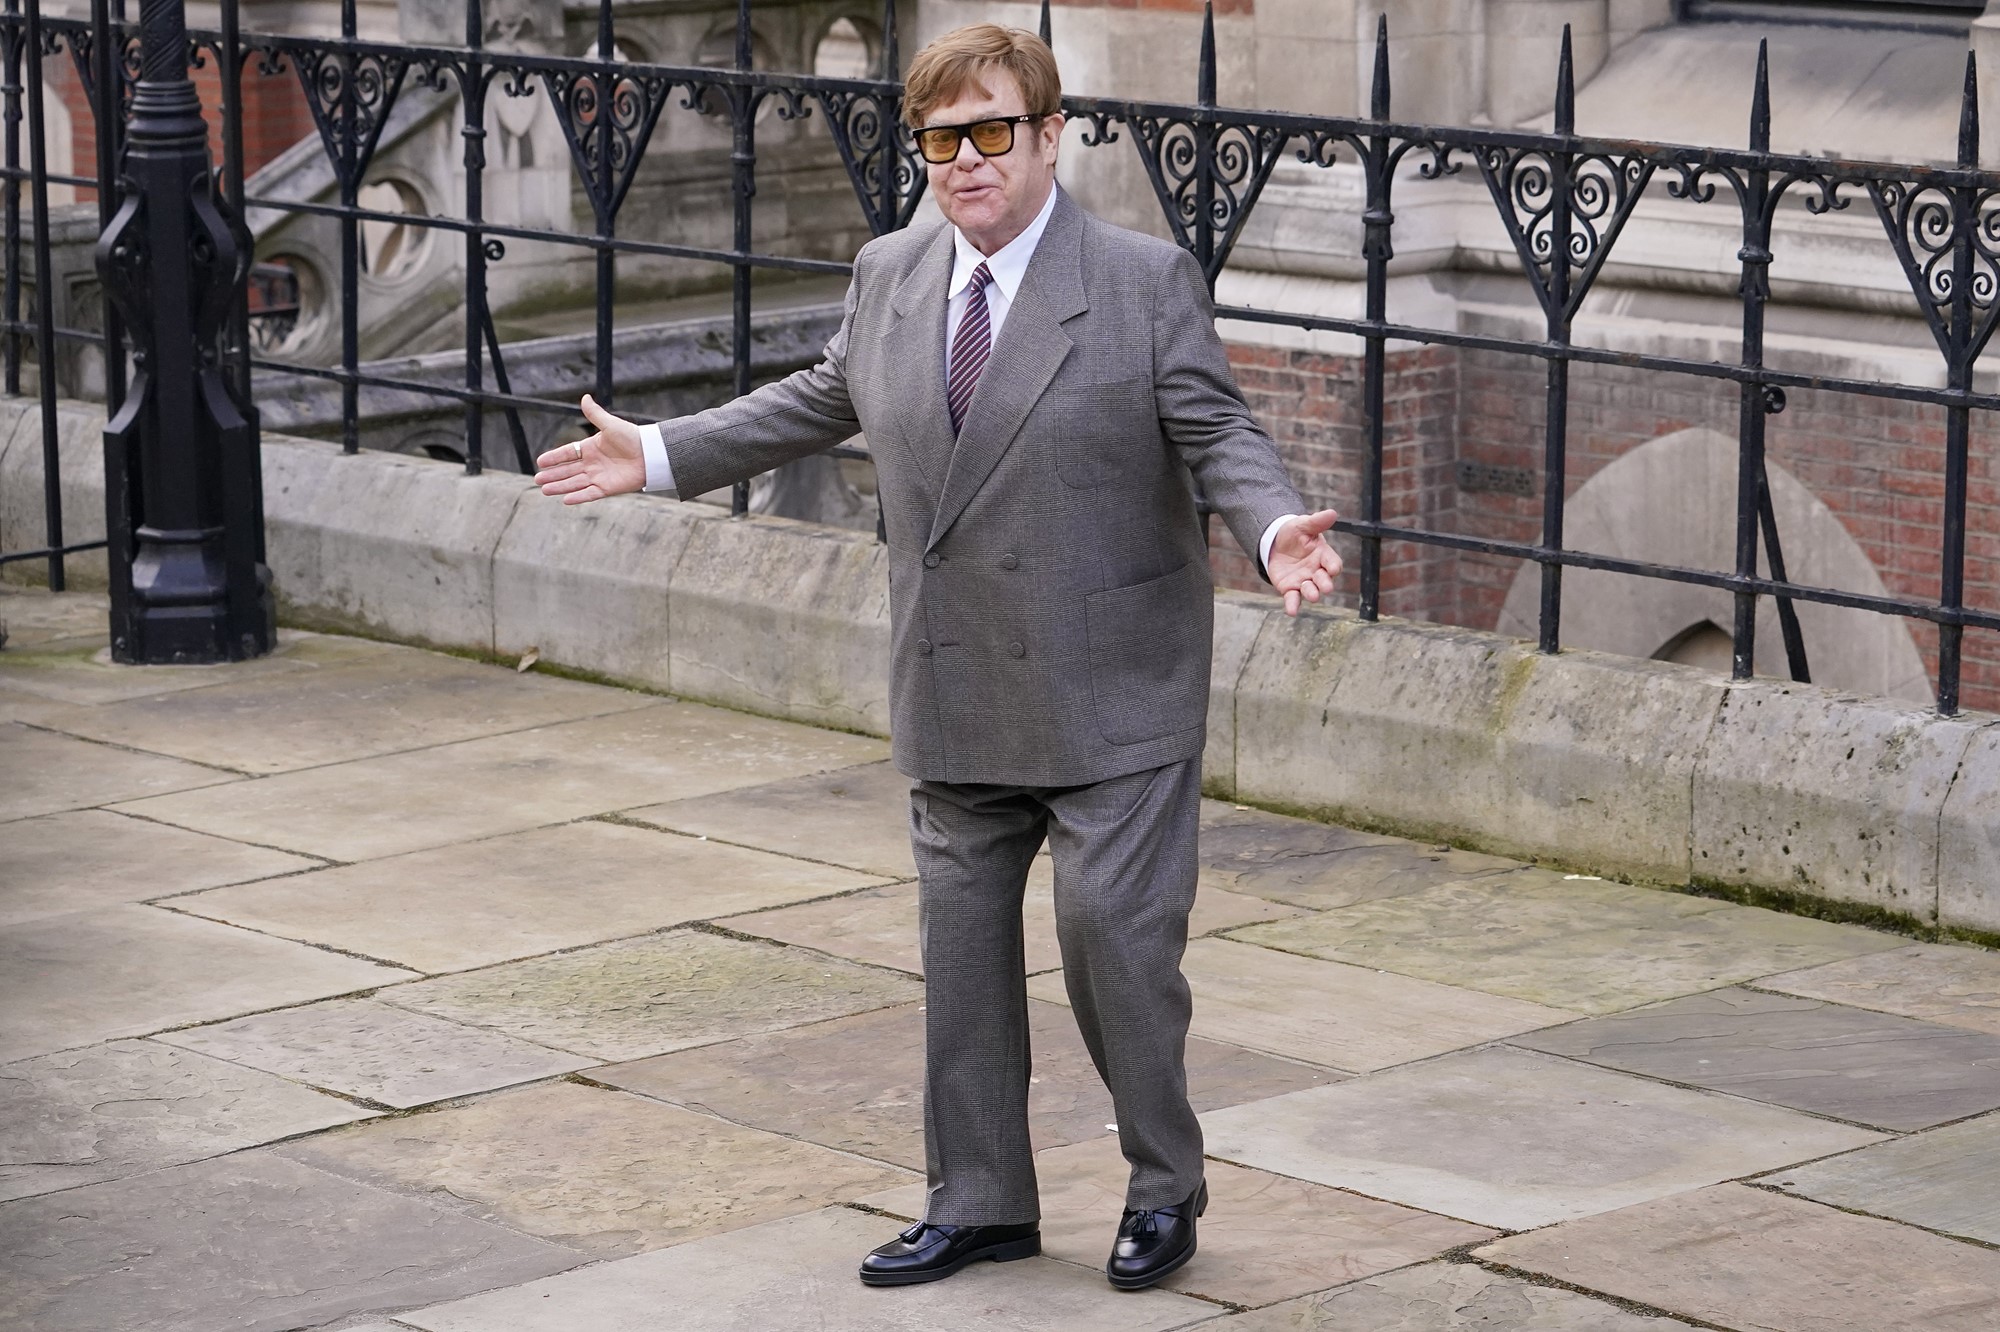 Elton John on a street in a suit.